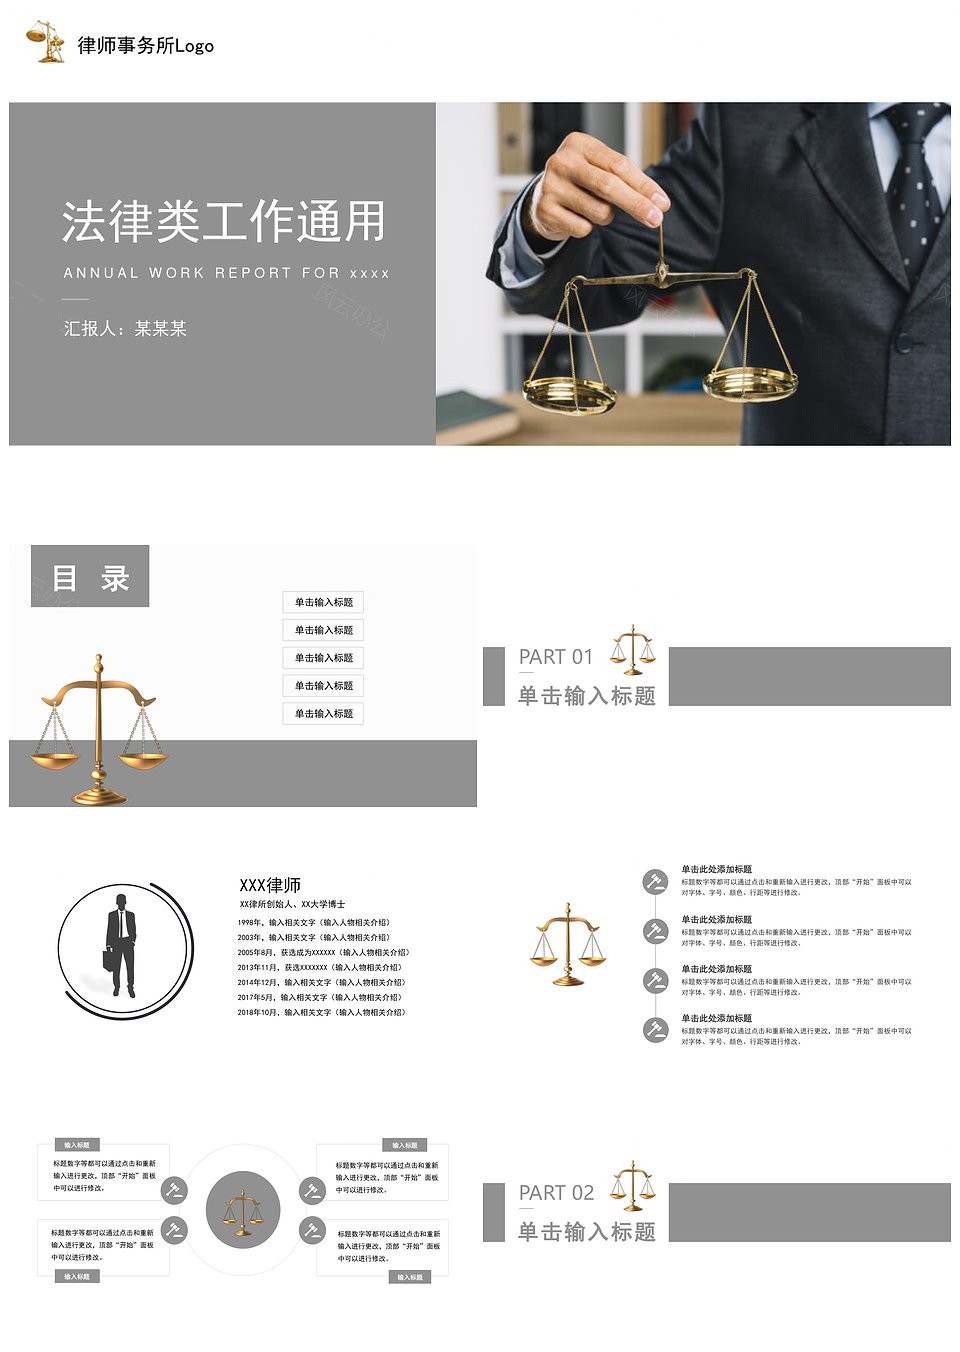 精美动态法律律师法务法学通用PPT模板下载